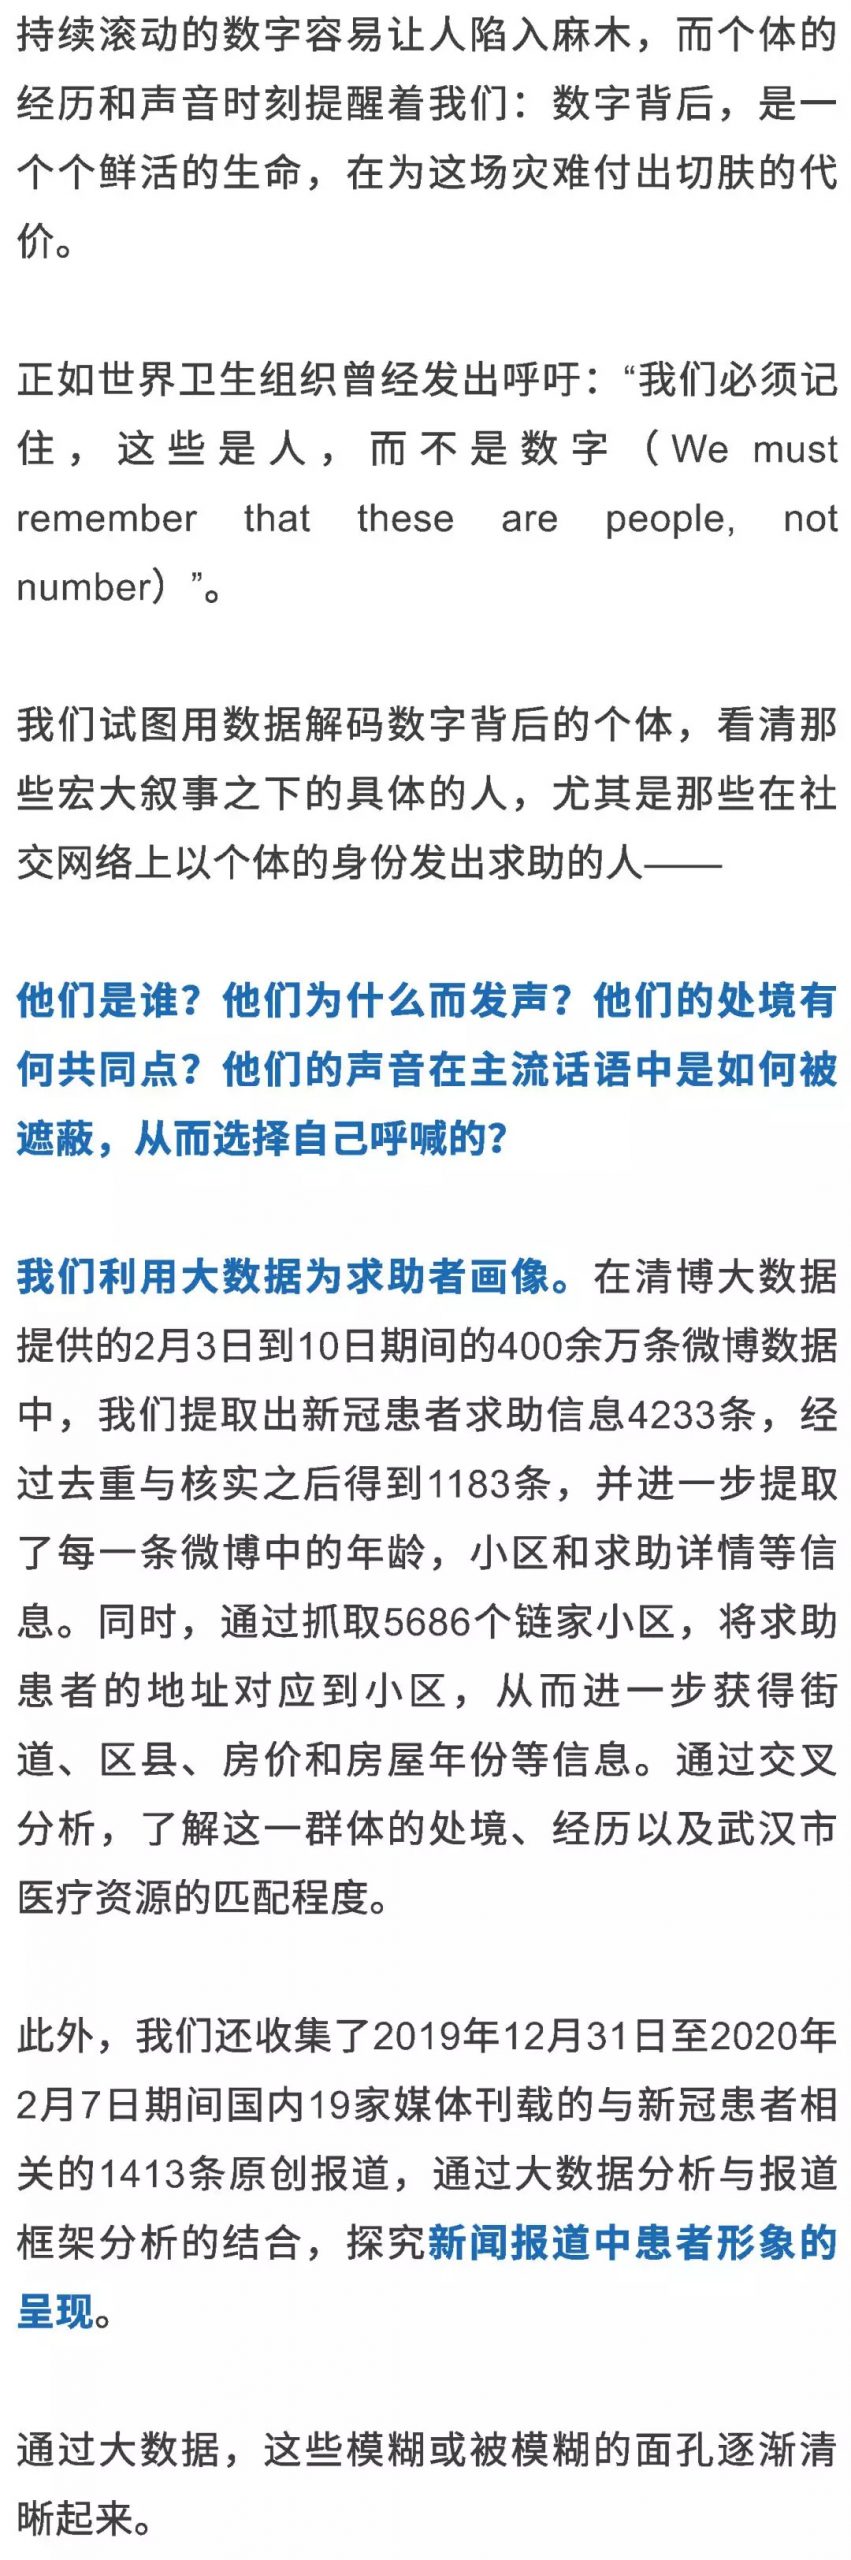 Ruc新闻坊 1183位求助者的数据画像 不是弱者 而是你我 中国数字时代